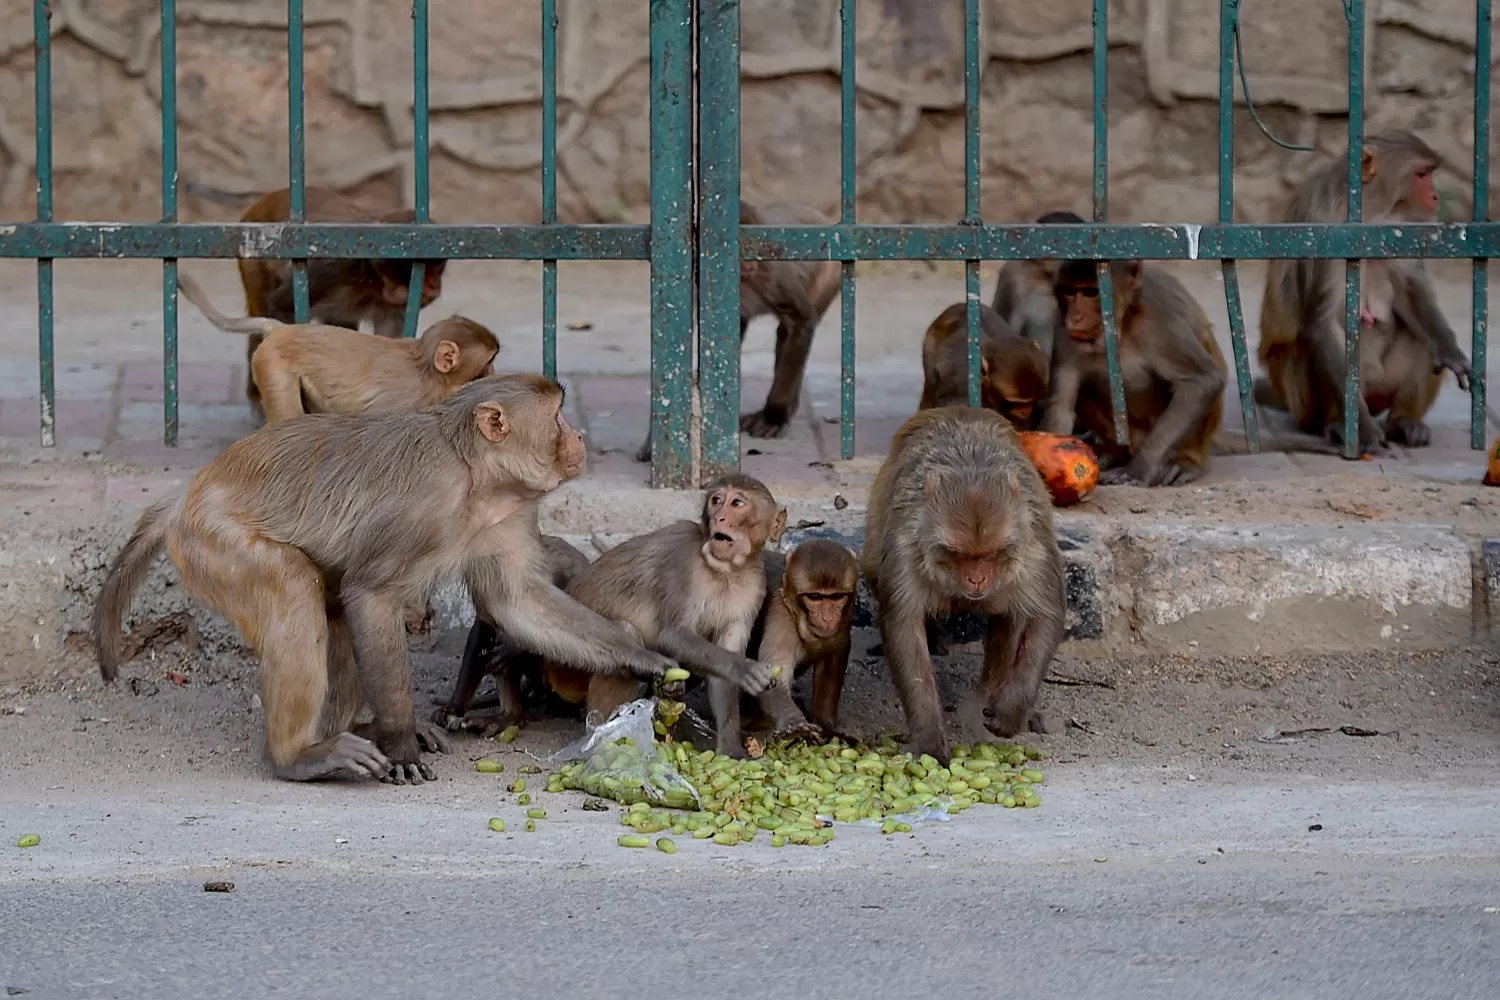 Monos ingresaron a un hospital de India y robaron muestras de pacientes con coronavirus